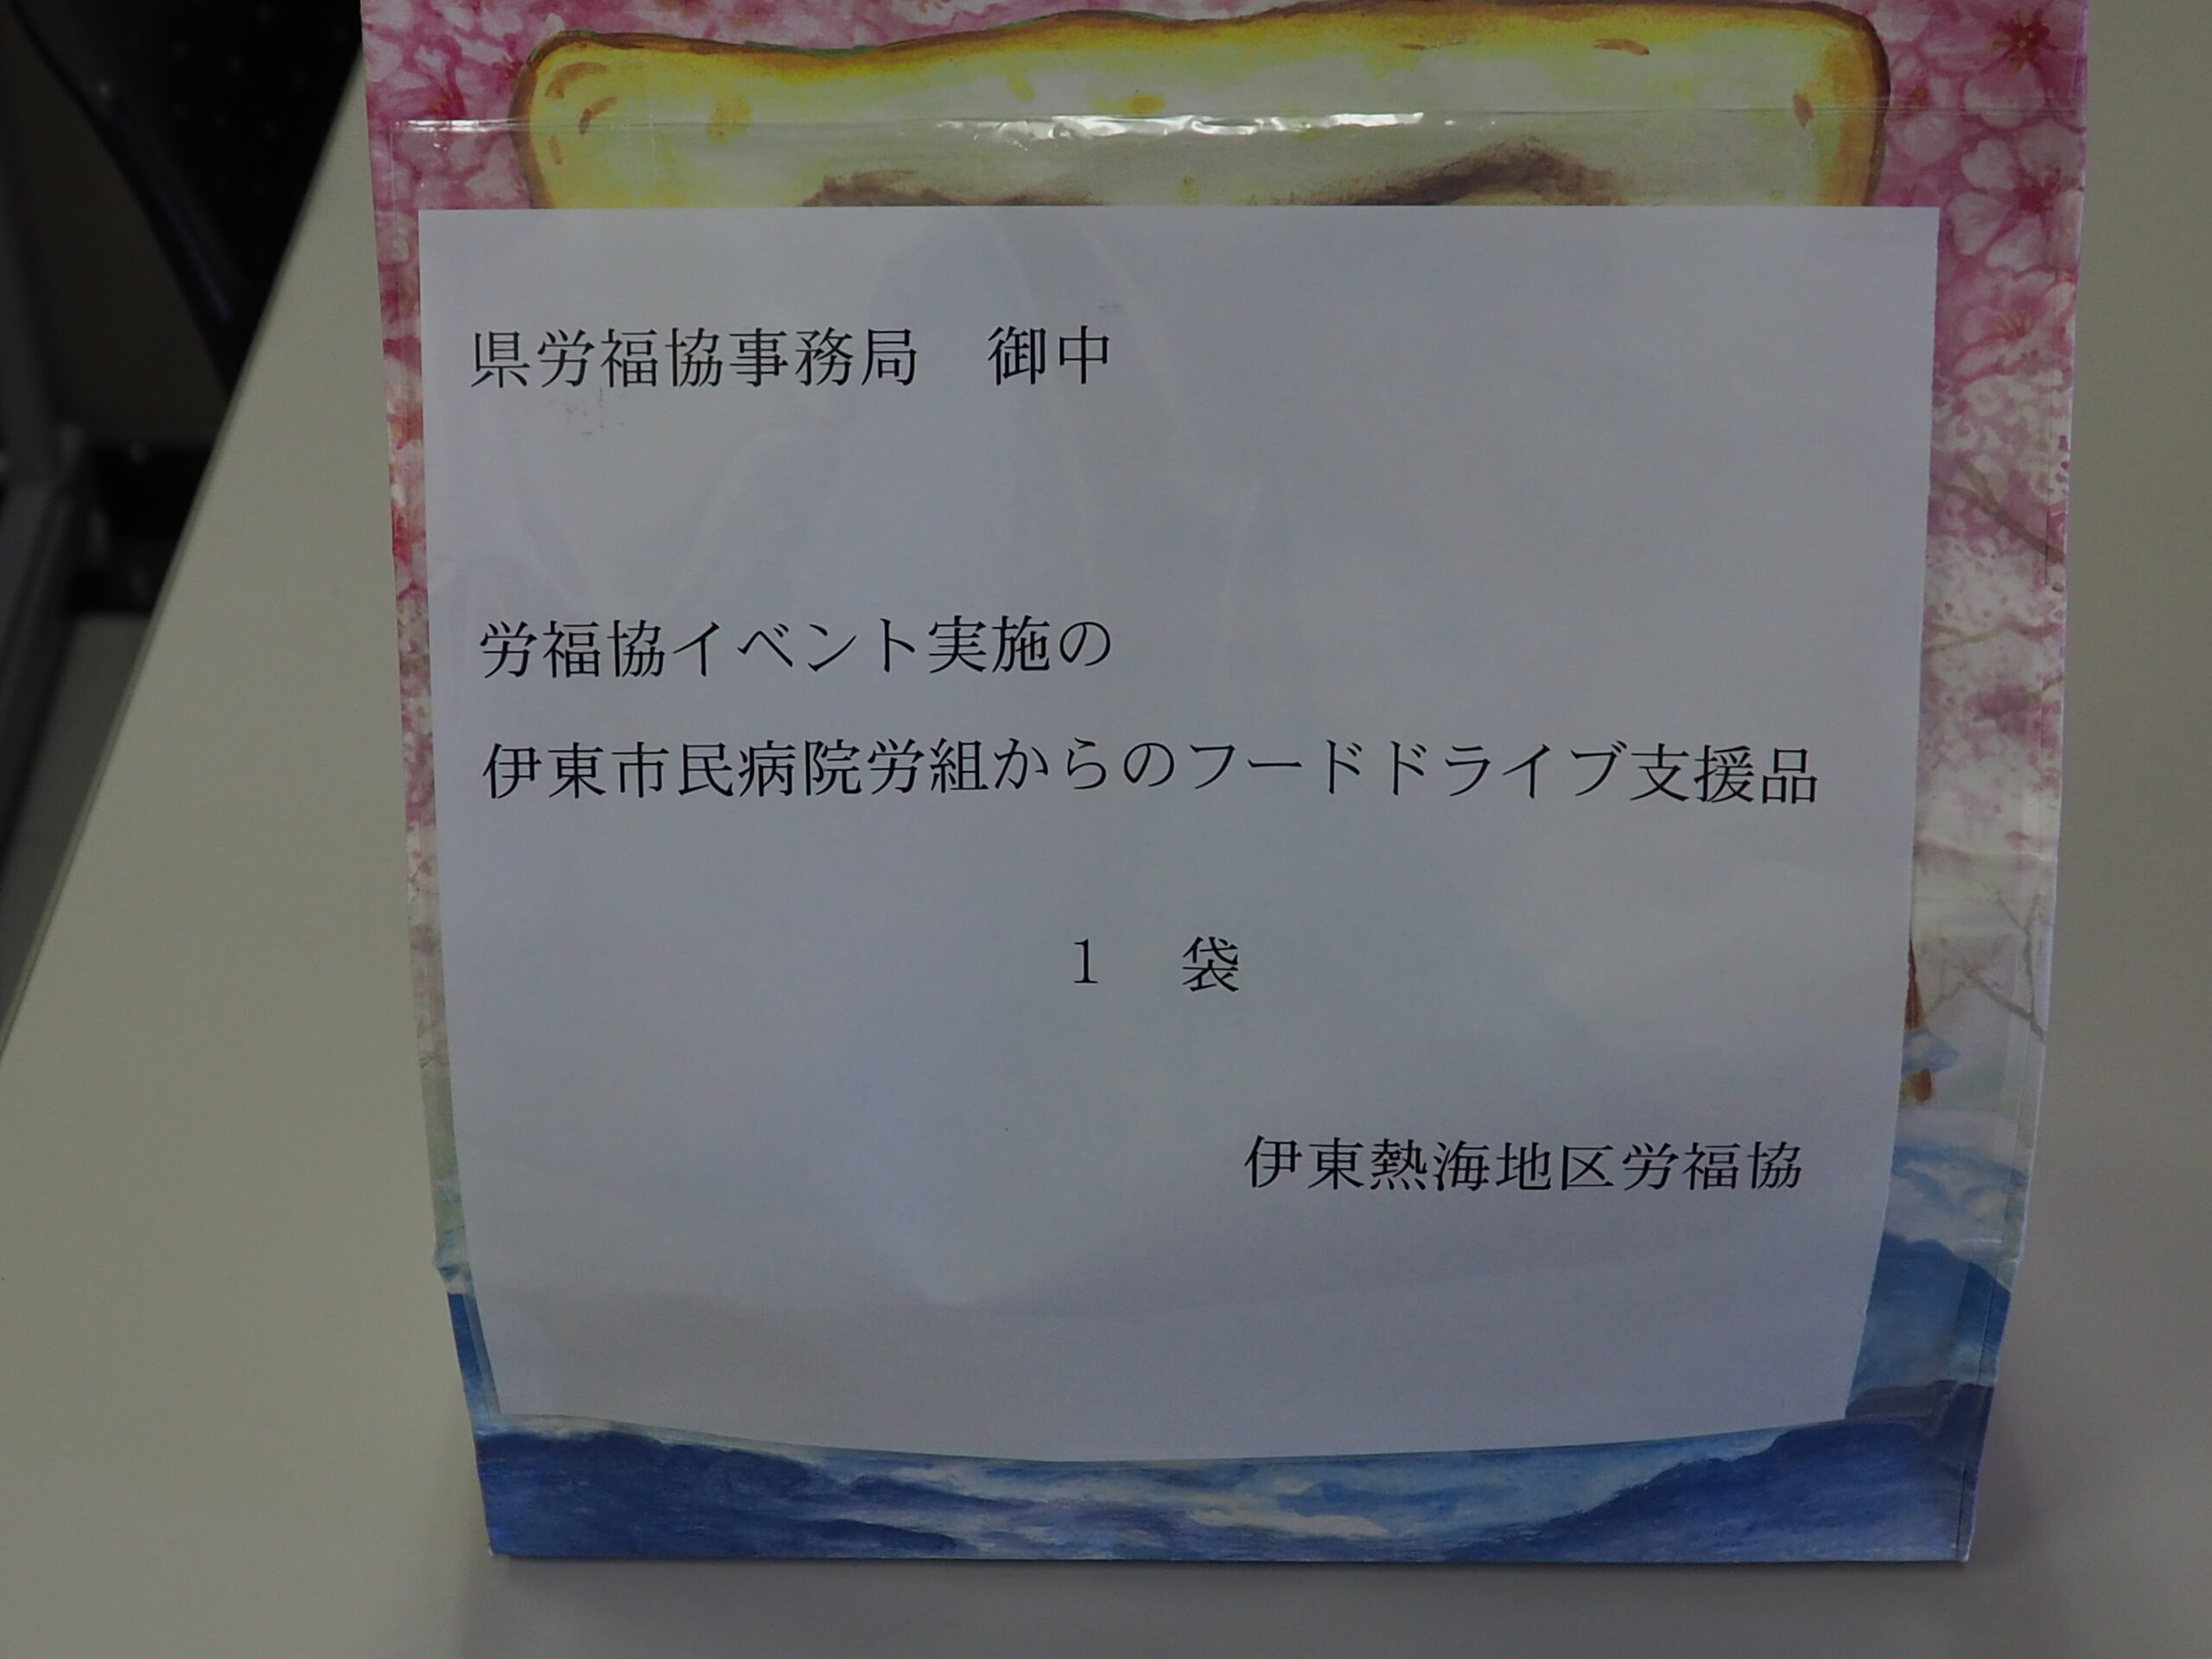 伊東市民病院労働組合様と矢崎エナジーシステム株式会社様から食品をいただきました。